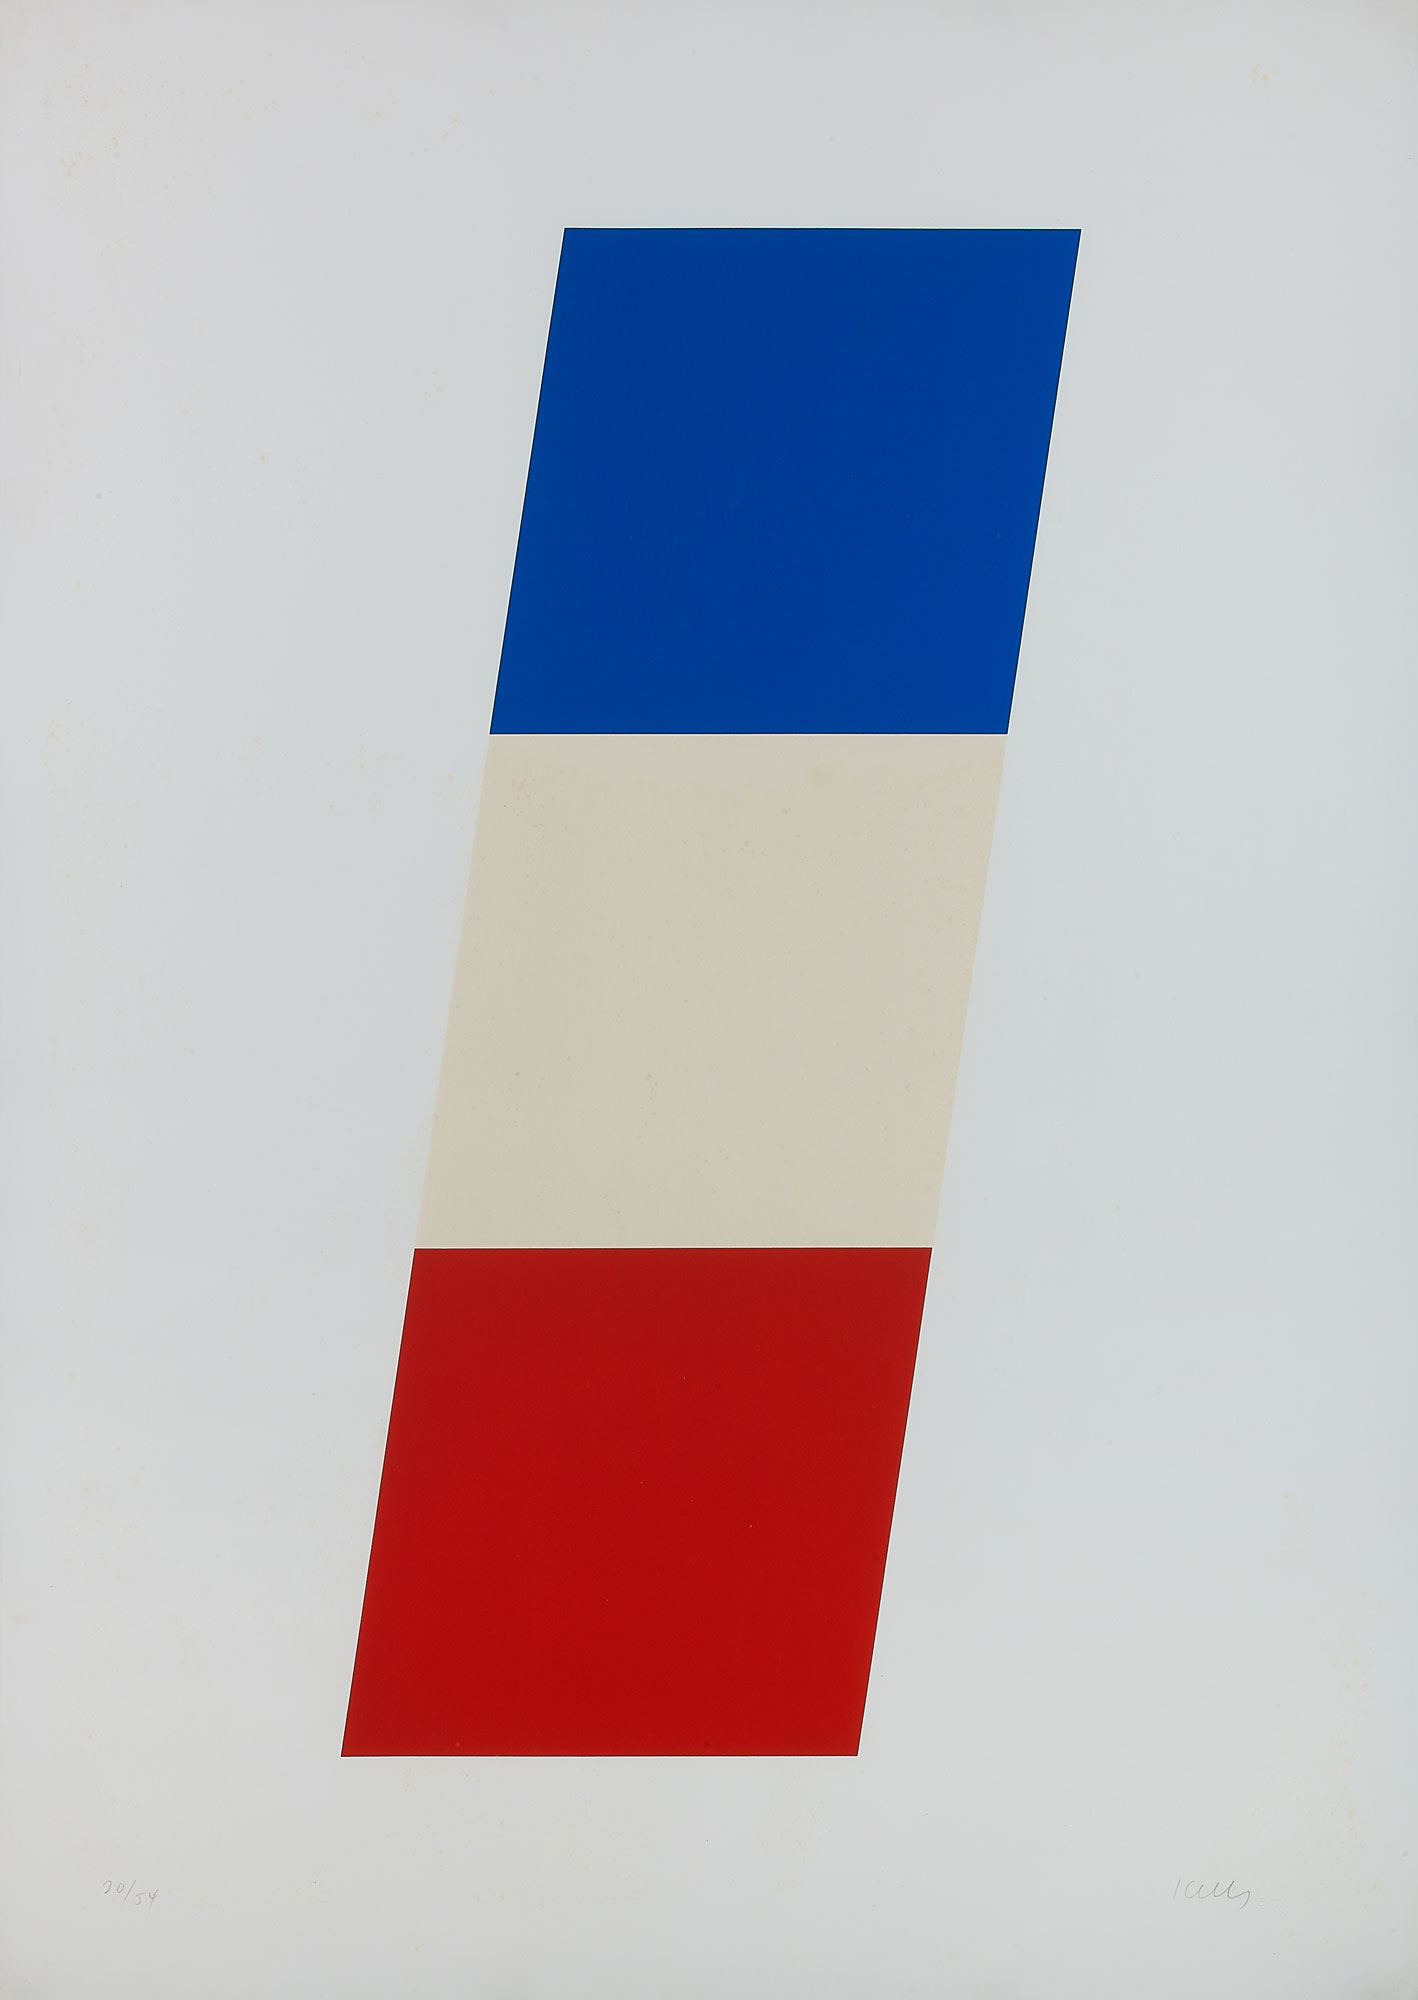 エルスワース・ケリー(Ellsworth Kelly) ブルー/ホワイト/レッド(Blue / White / Red)<br> 1970年 108×76cm リトグラフ ed.54